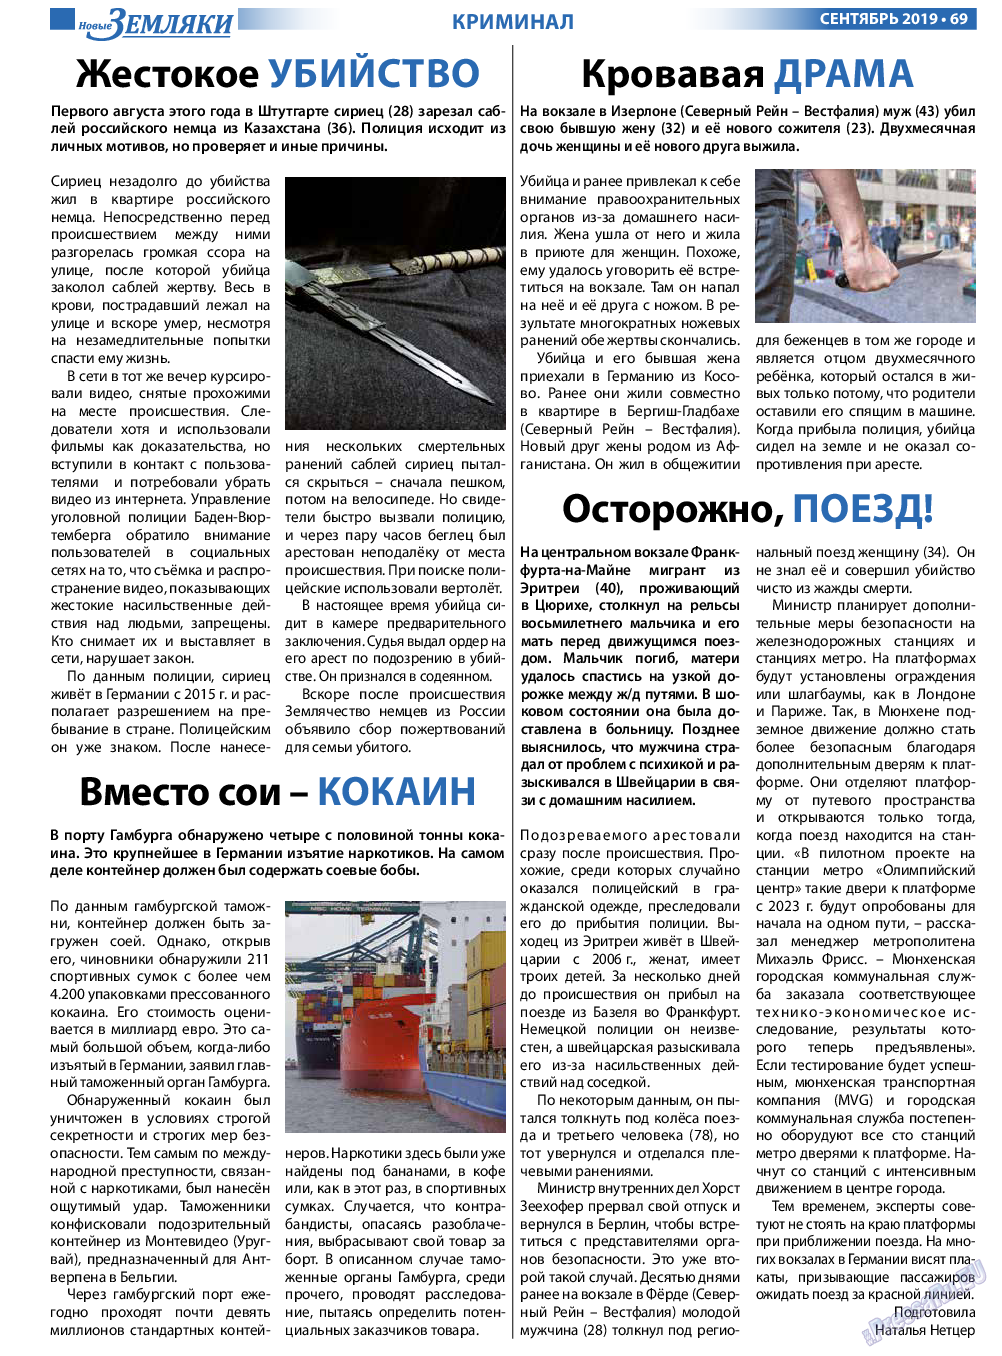 Новые Земляки (газета). 2019 год, номер 9, стр. 69